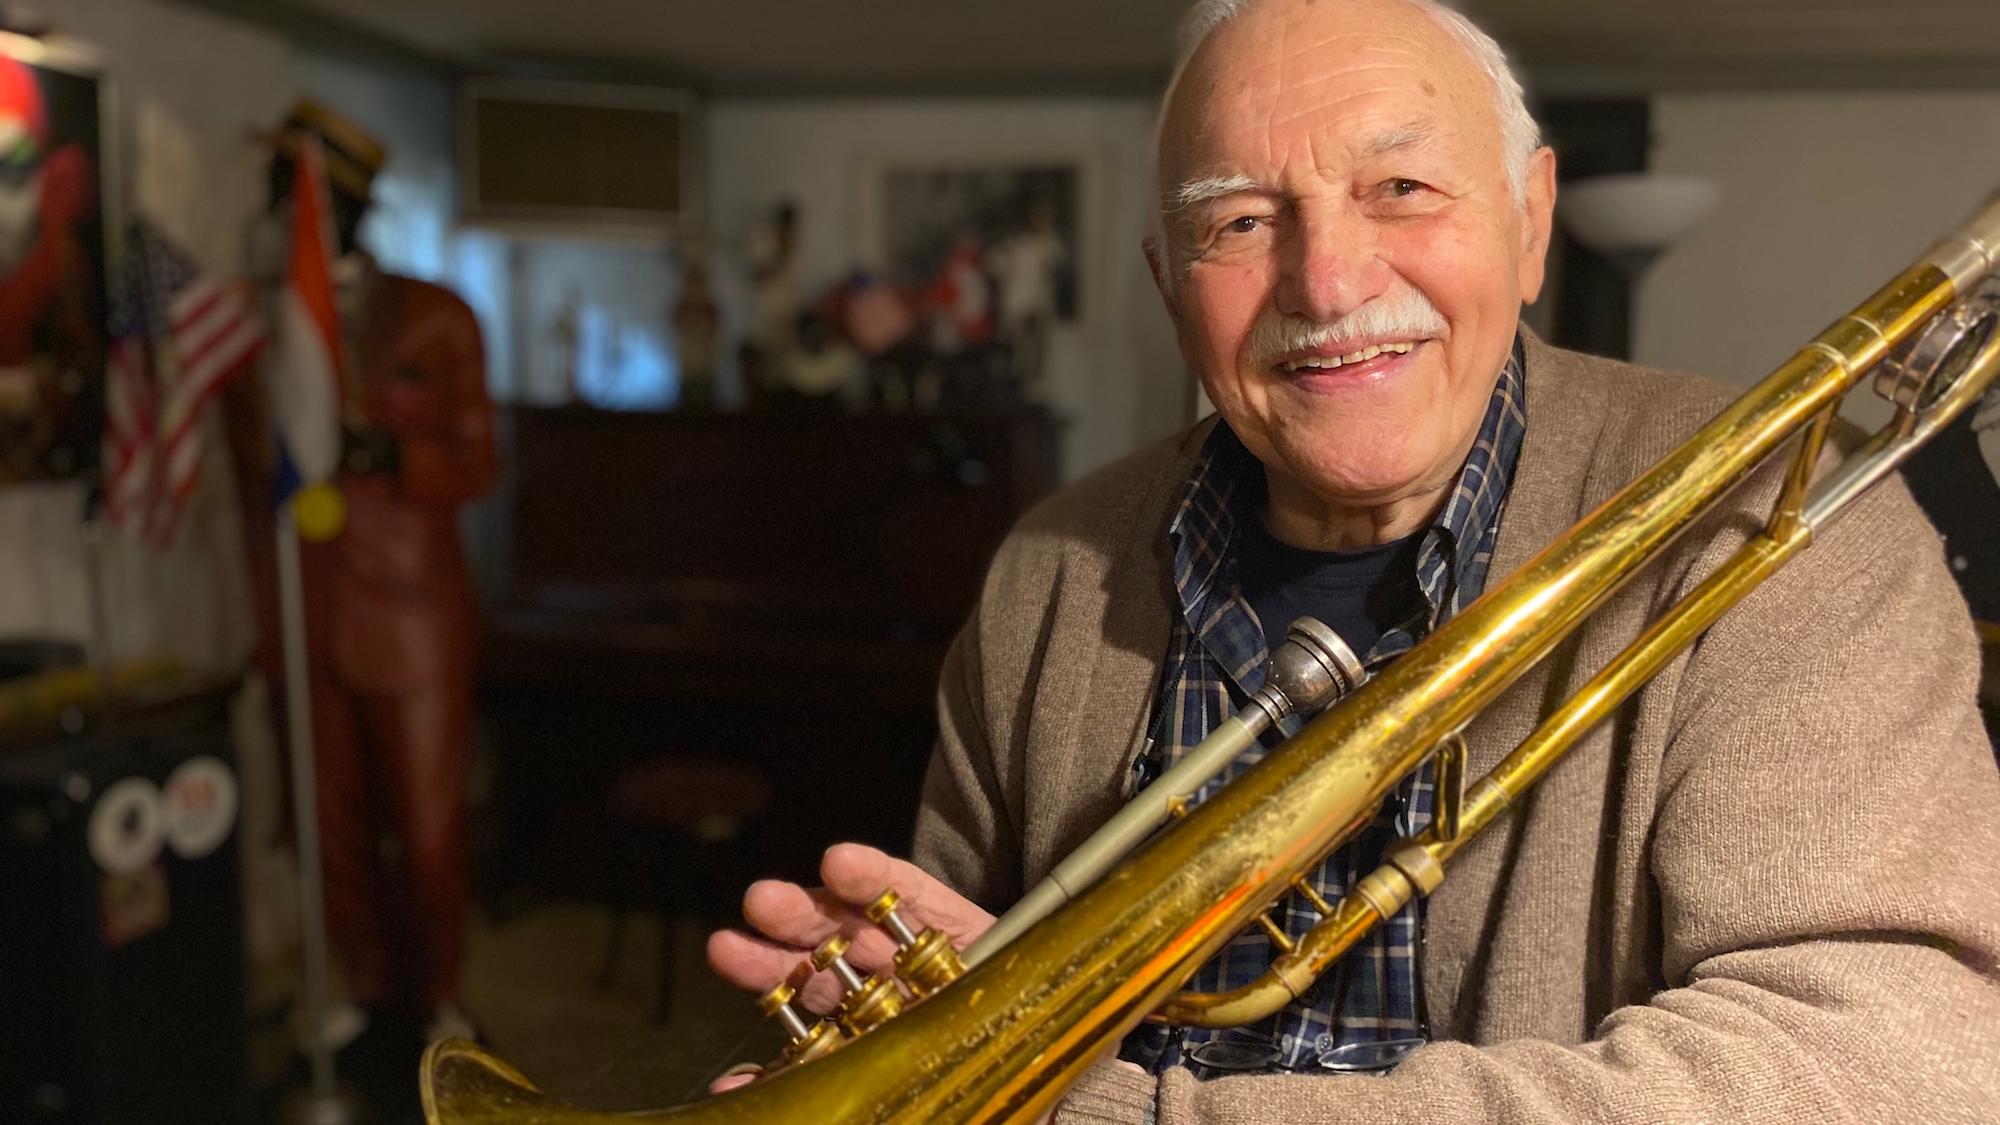 Trompete und Posaune sind seit 70 Jahren seine treuen Begleiterinnen. Zu Konzerten trägt Walter Maaßen einen Hut, um Spenden zu sammeln. (c) Garnet Manecke